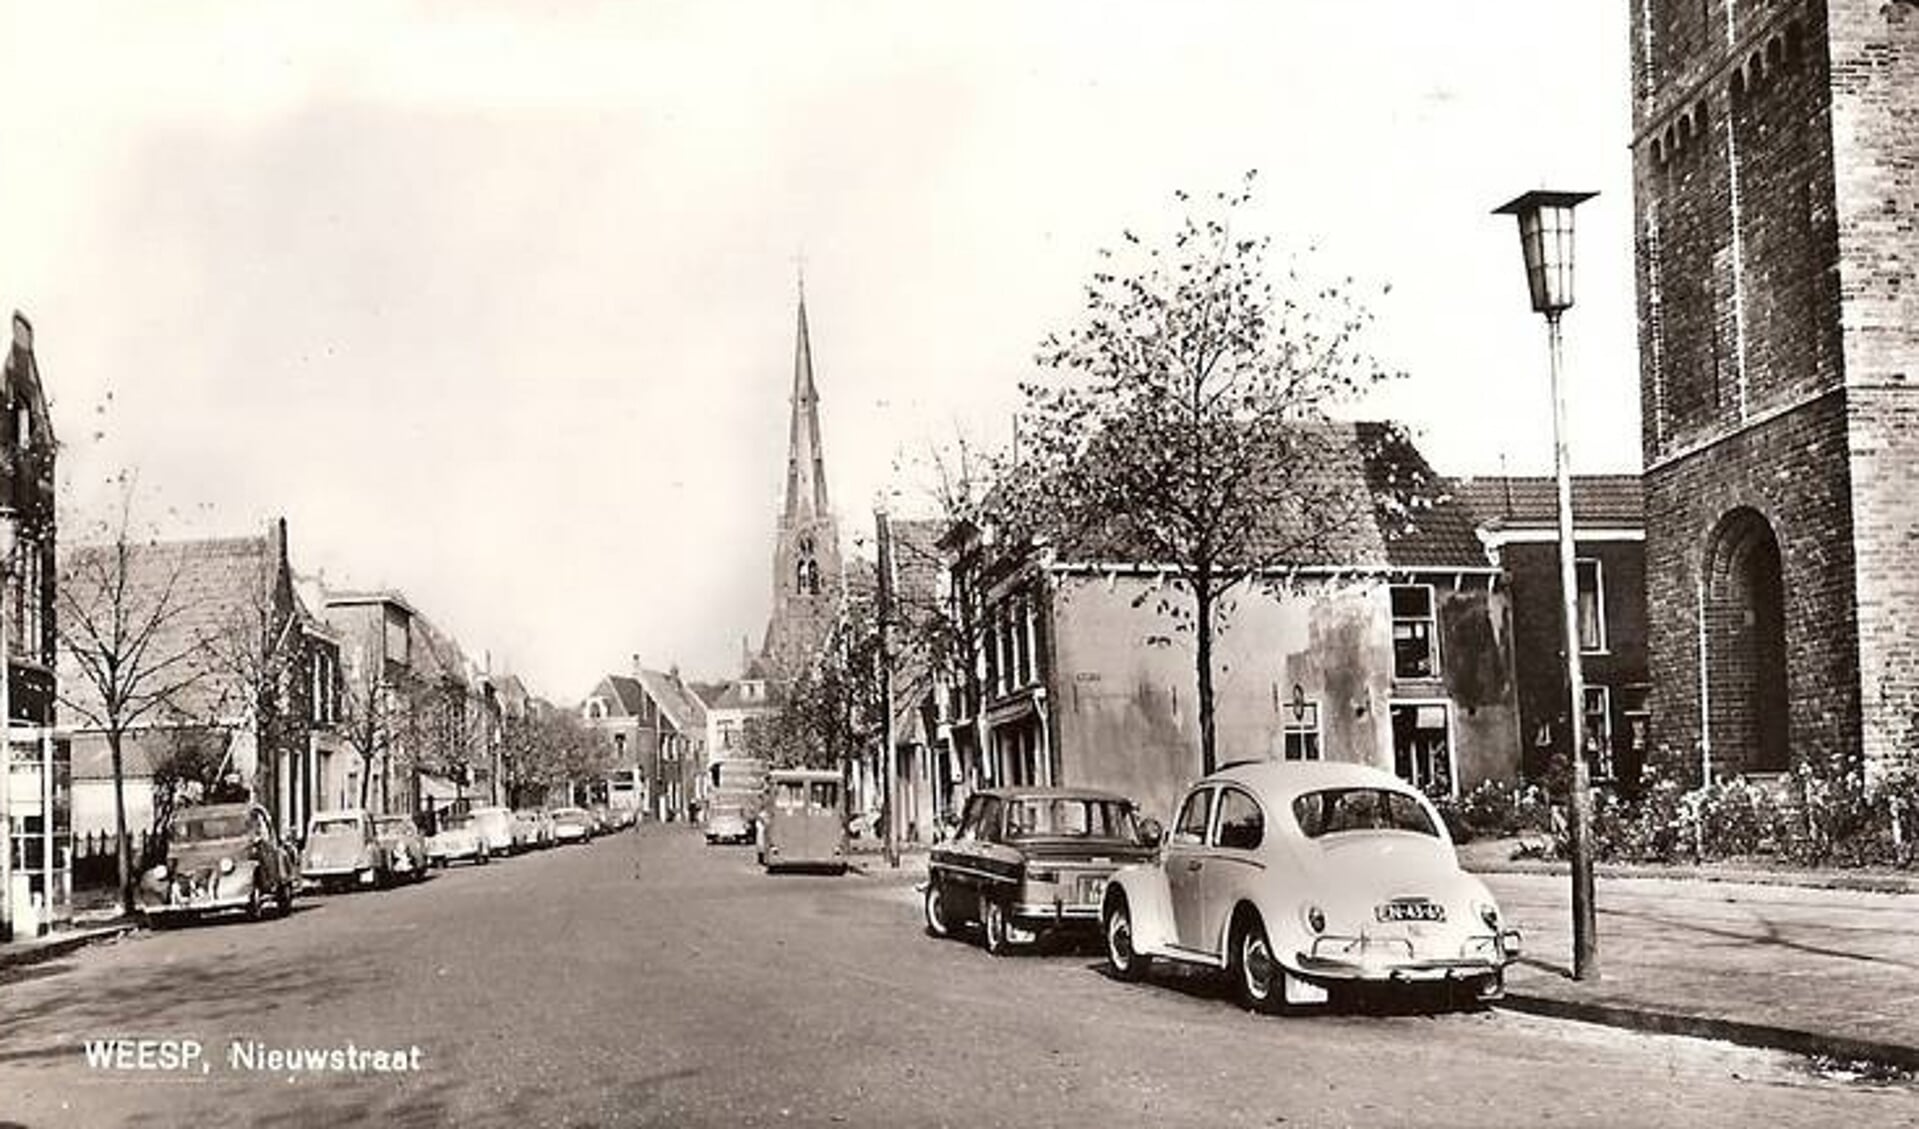 Oude ansichtkaart van de Nieuwstraat in 1955 